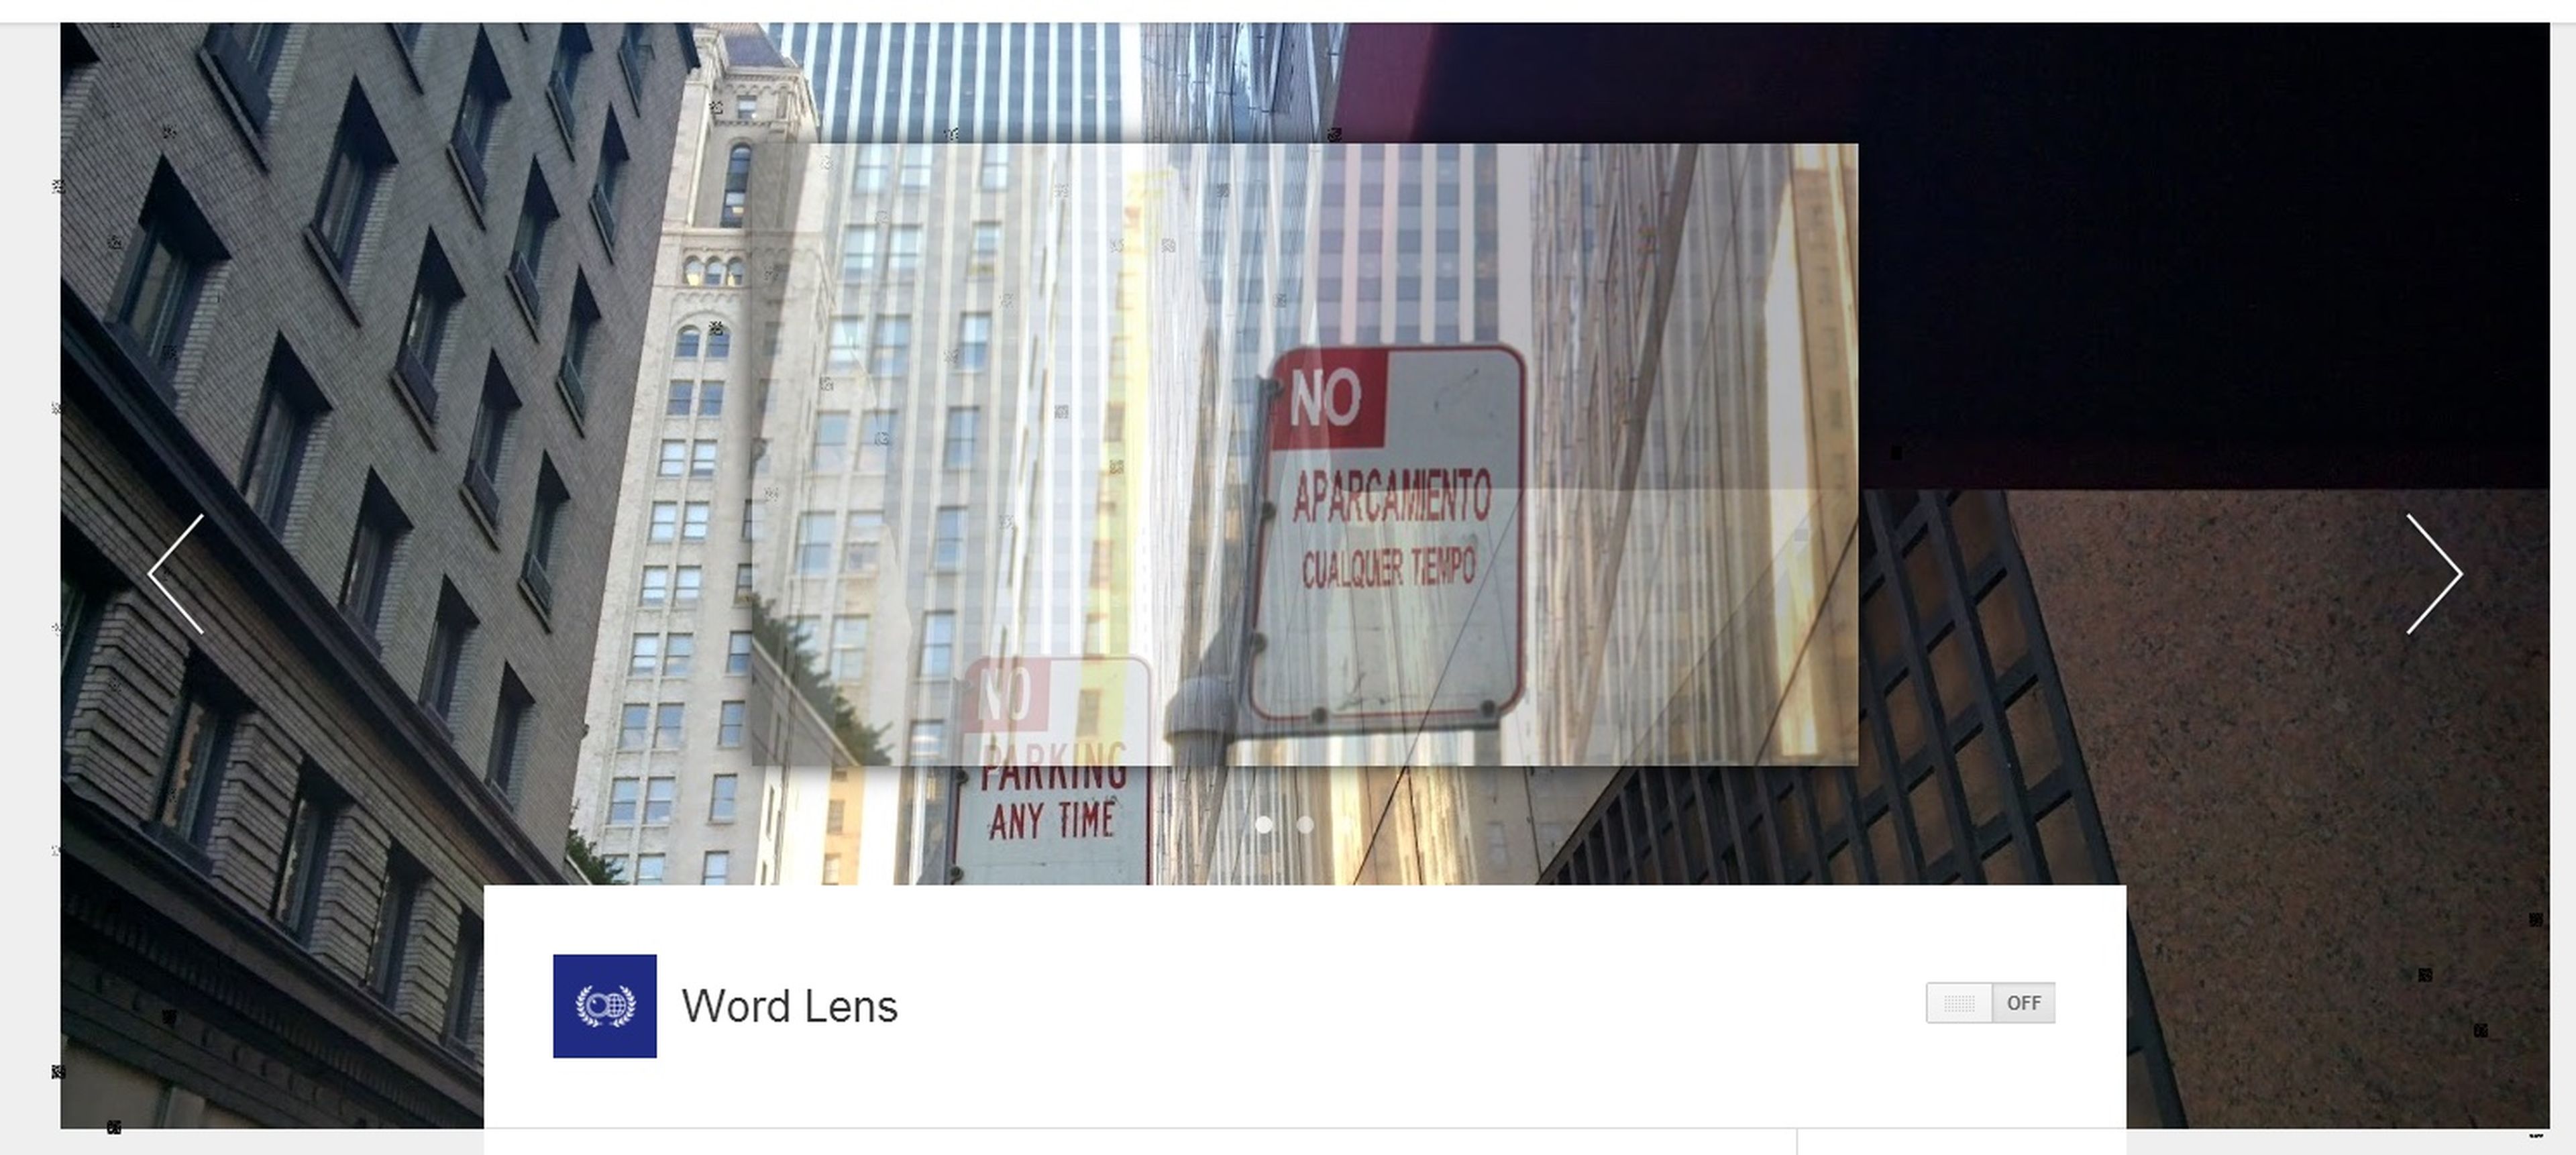 Traducción en tiempo real: con la aplicación Word Lens instalada en el dispositivo, Google Glass era capaz, por ejemplo, de traducir señales de tráfico al momento.